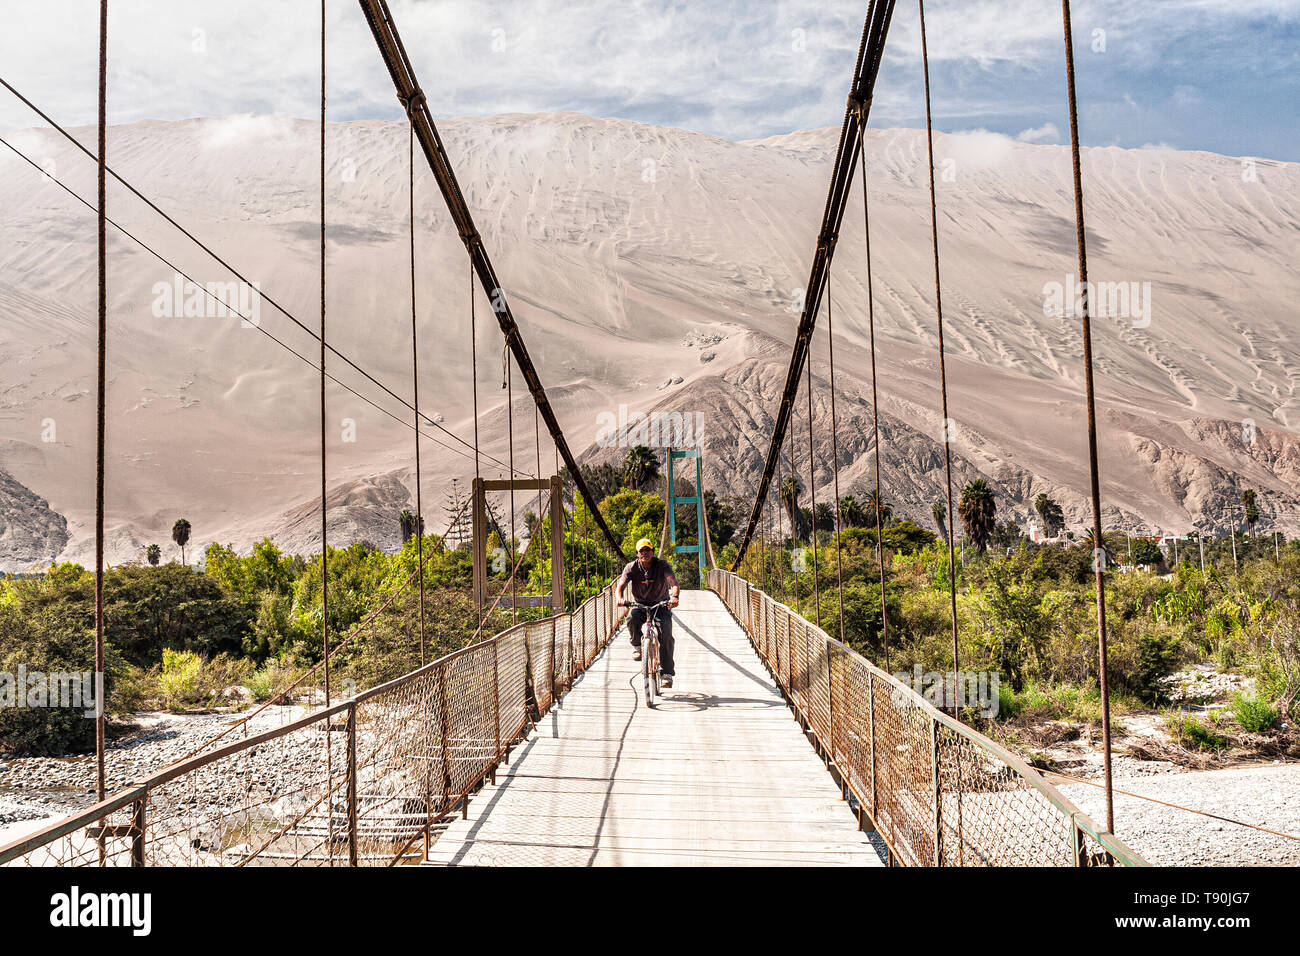 L'homme de faire du vélo sur la passerelle au-dessus de la rivière et des acariens Cerro Toro Mata en arrière-plan. Acari, Département d'Arequipa, Pérou. Banque D'Images